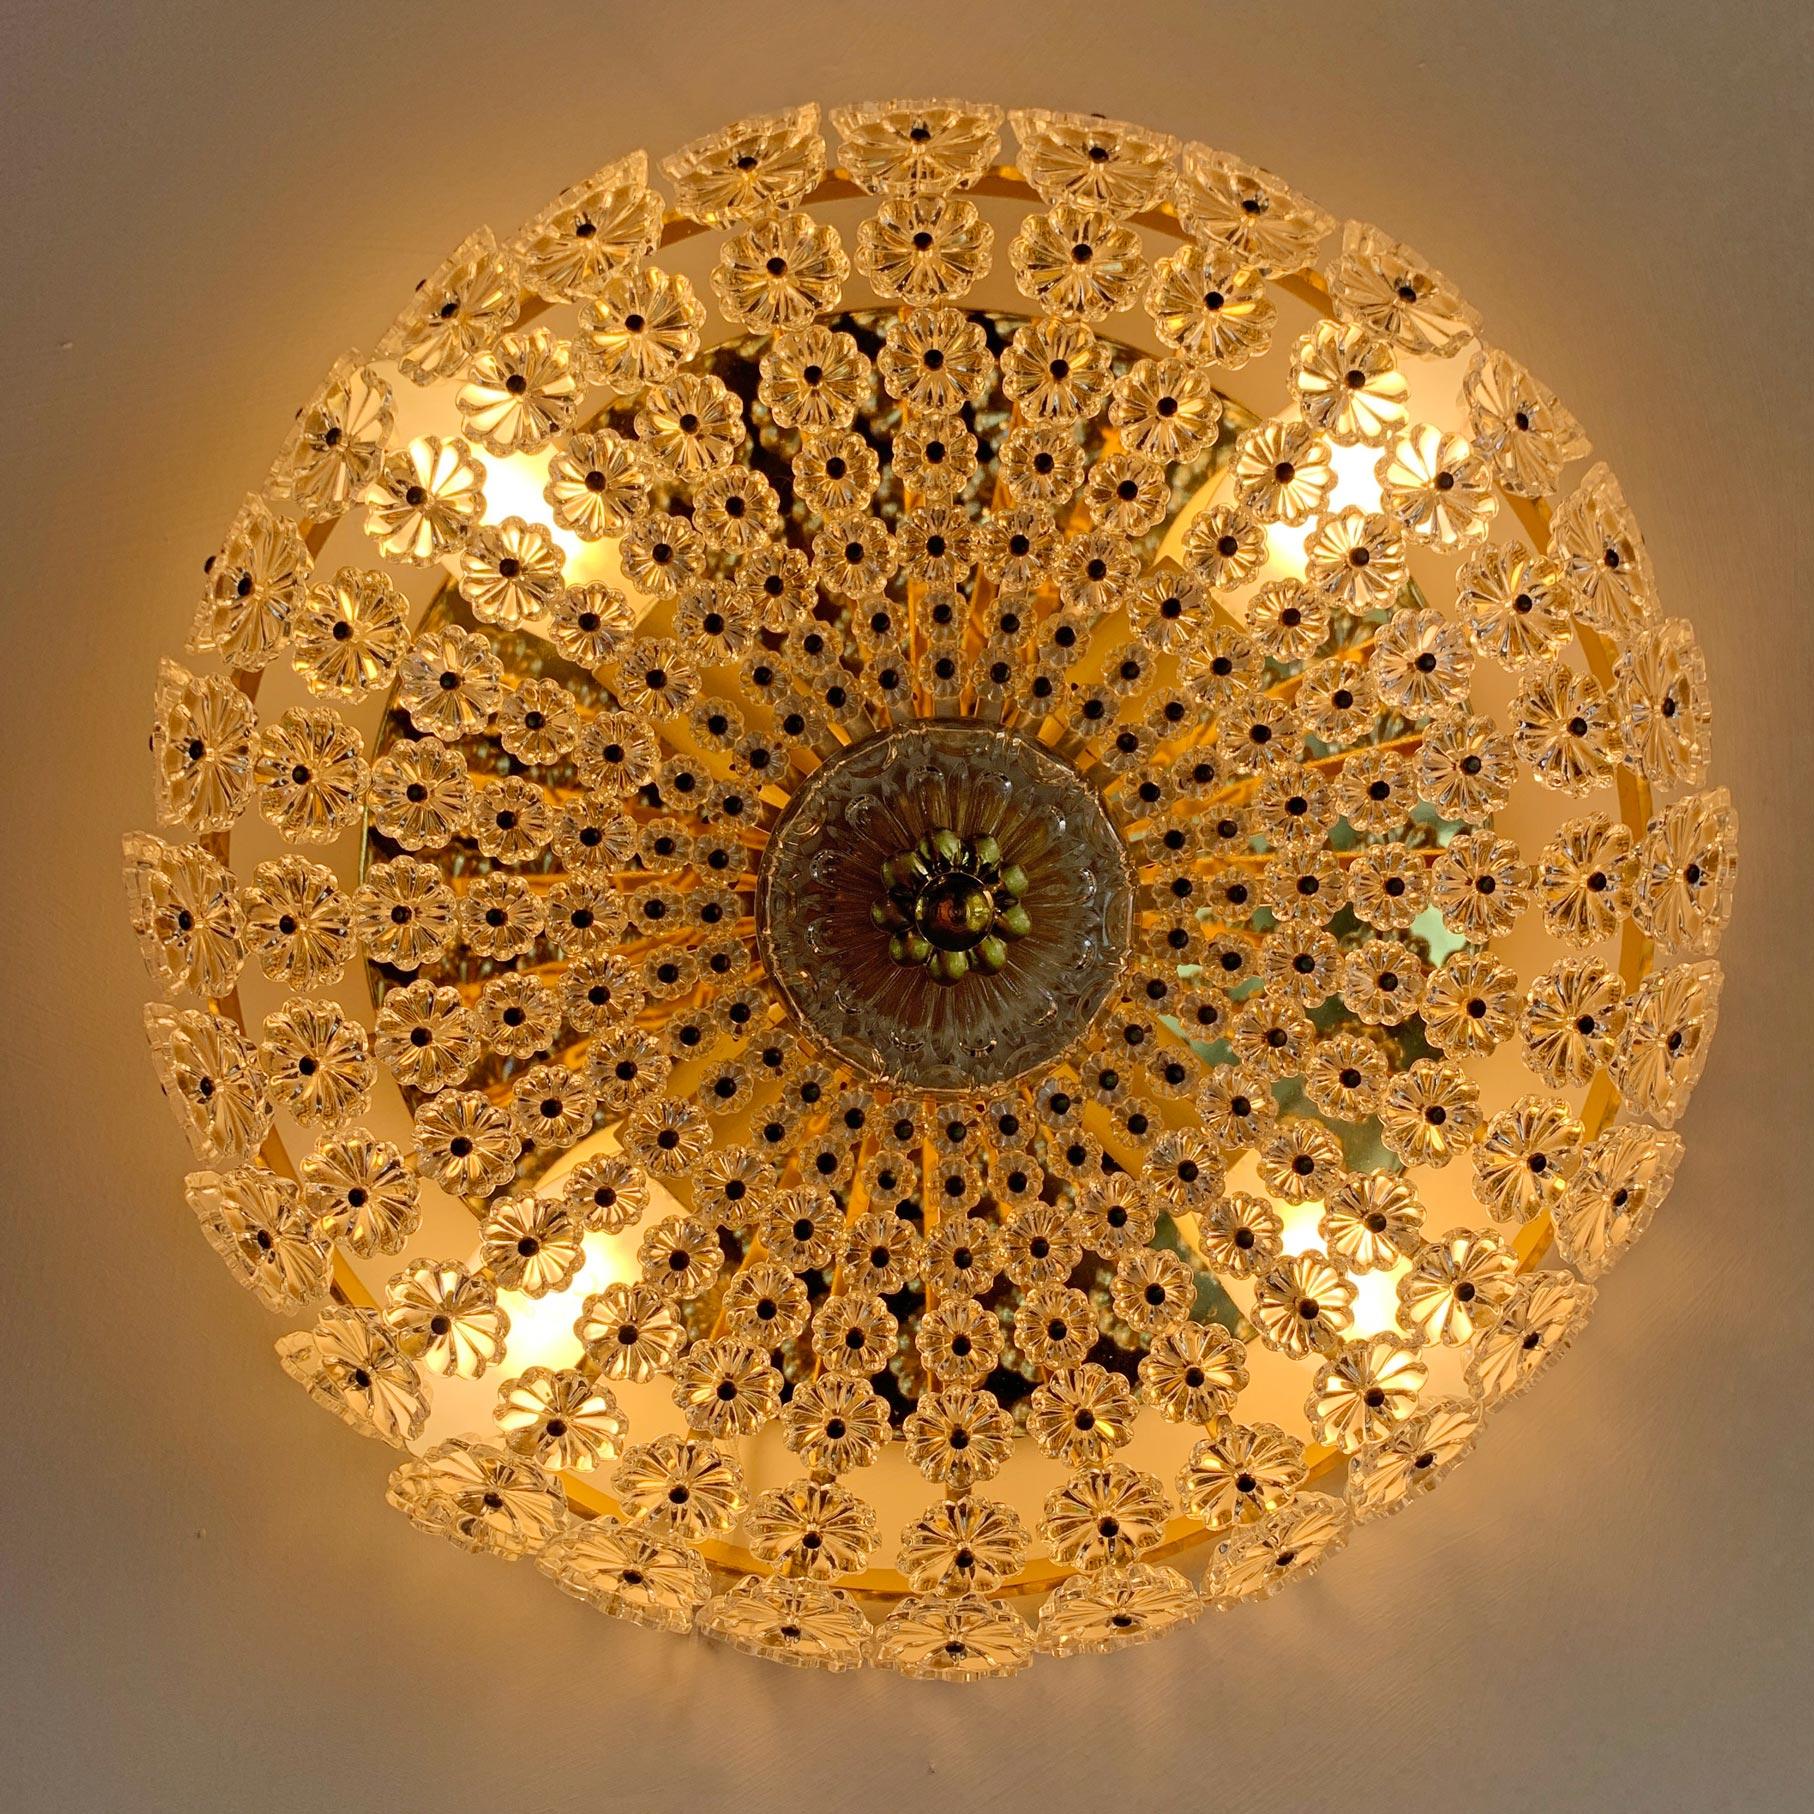 Emil Stejnar (Australien) Sonnenschliff-Einbauleuchte, entworfen für die Firma H. Richter, 1950er Jahre.

Elegante, goldfarbene Einbaubeleuchtung mit Hunderten von einzelnen kleinen, umgedrehten Blumen aus Glas auf einem goldenen Rahmen mit einem